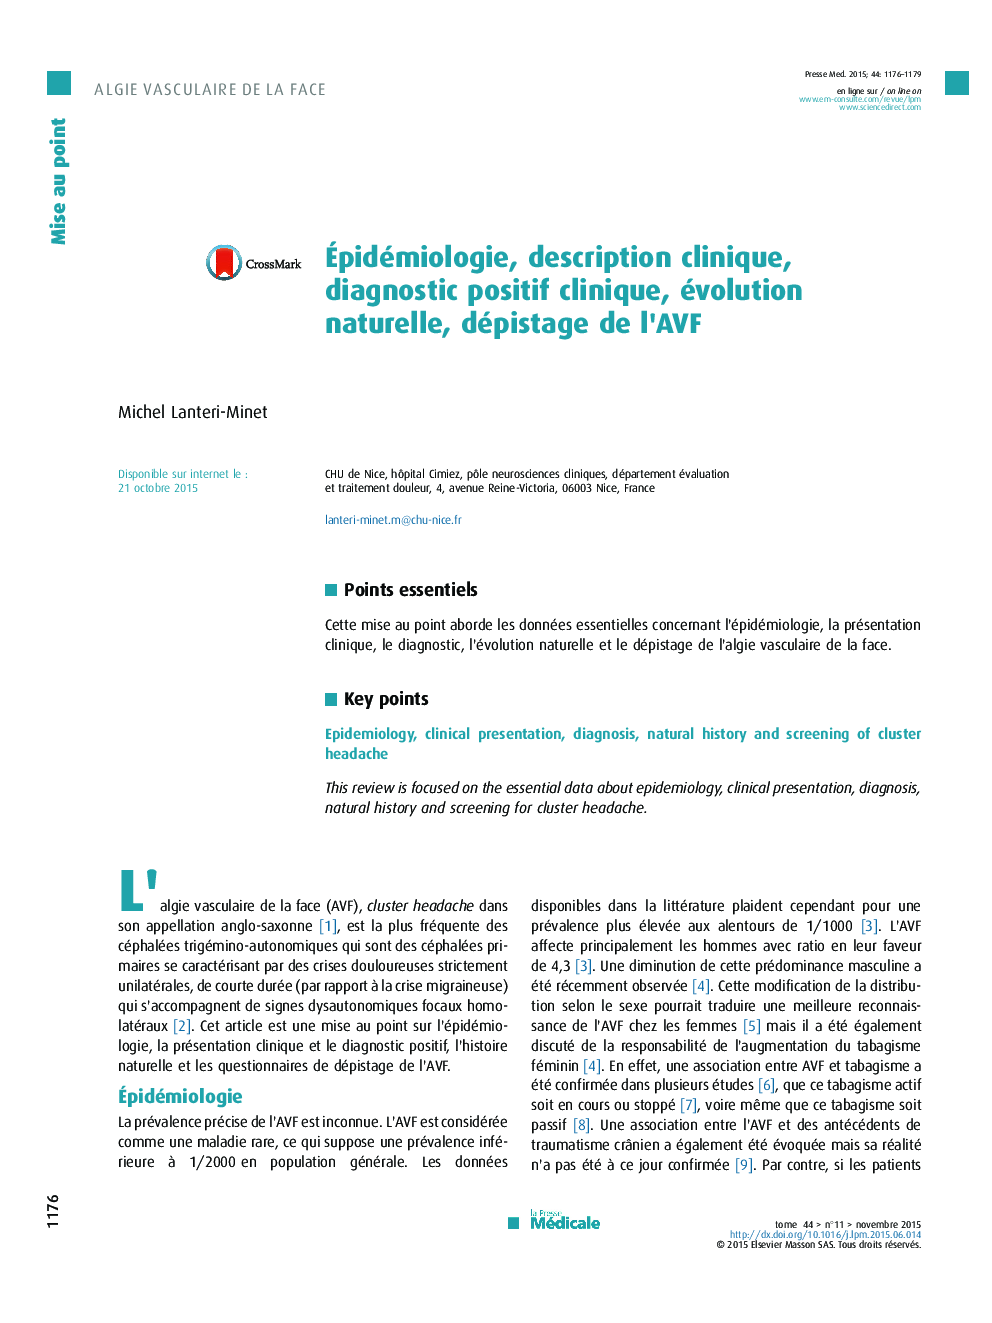 Épidémiologie, description clinique, diagnostic positif clinique, évolution naturelle, dépistage de l’AVF